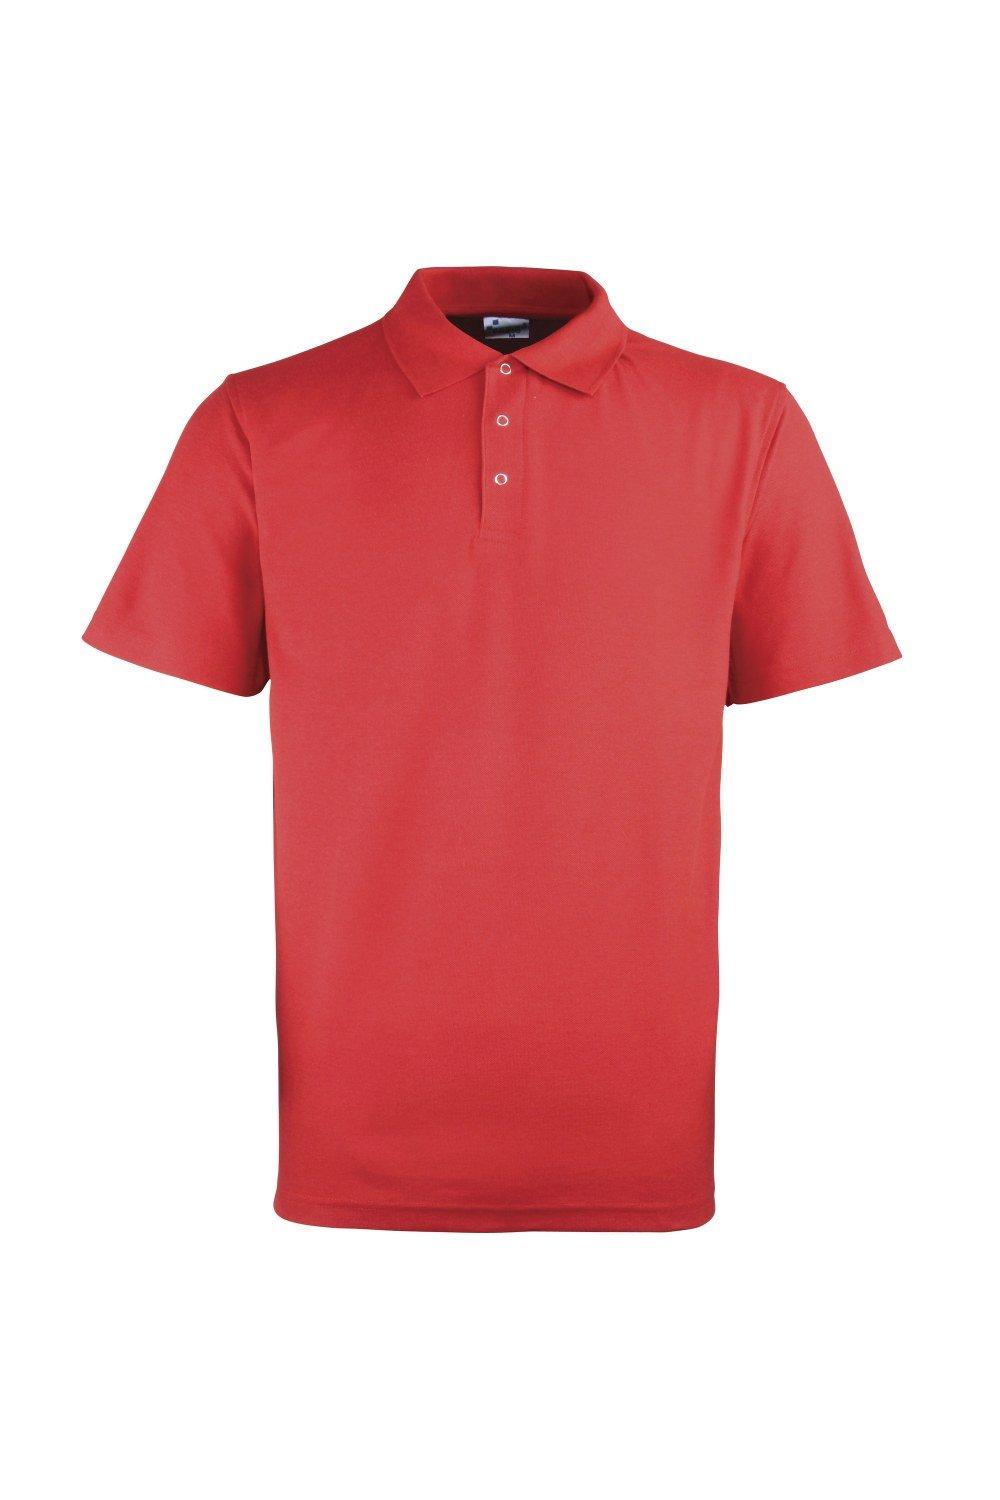 Однотонная рубашка-поло из тяжелого пике с заклепками Premier, красный рубашка sol s размер xl красный